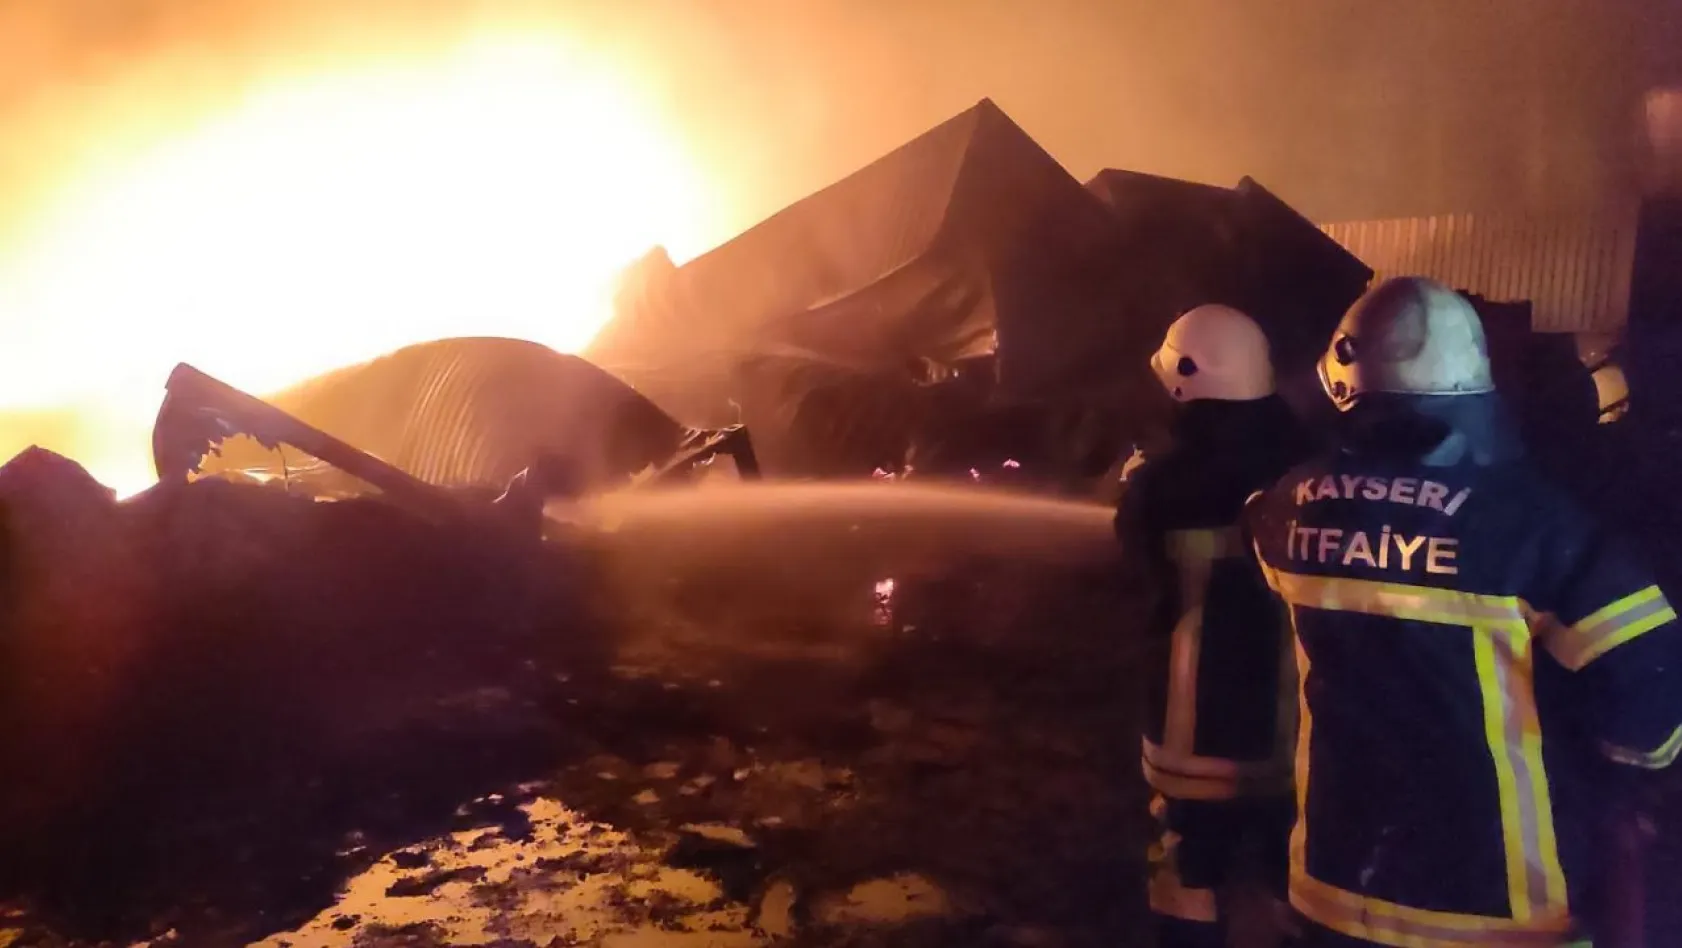 İskenderun Limanı'nda yangınla mücadele devam ediyor